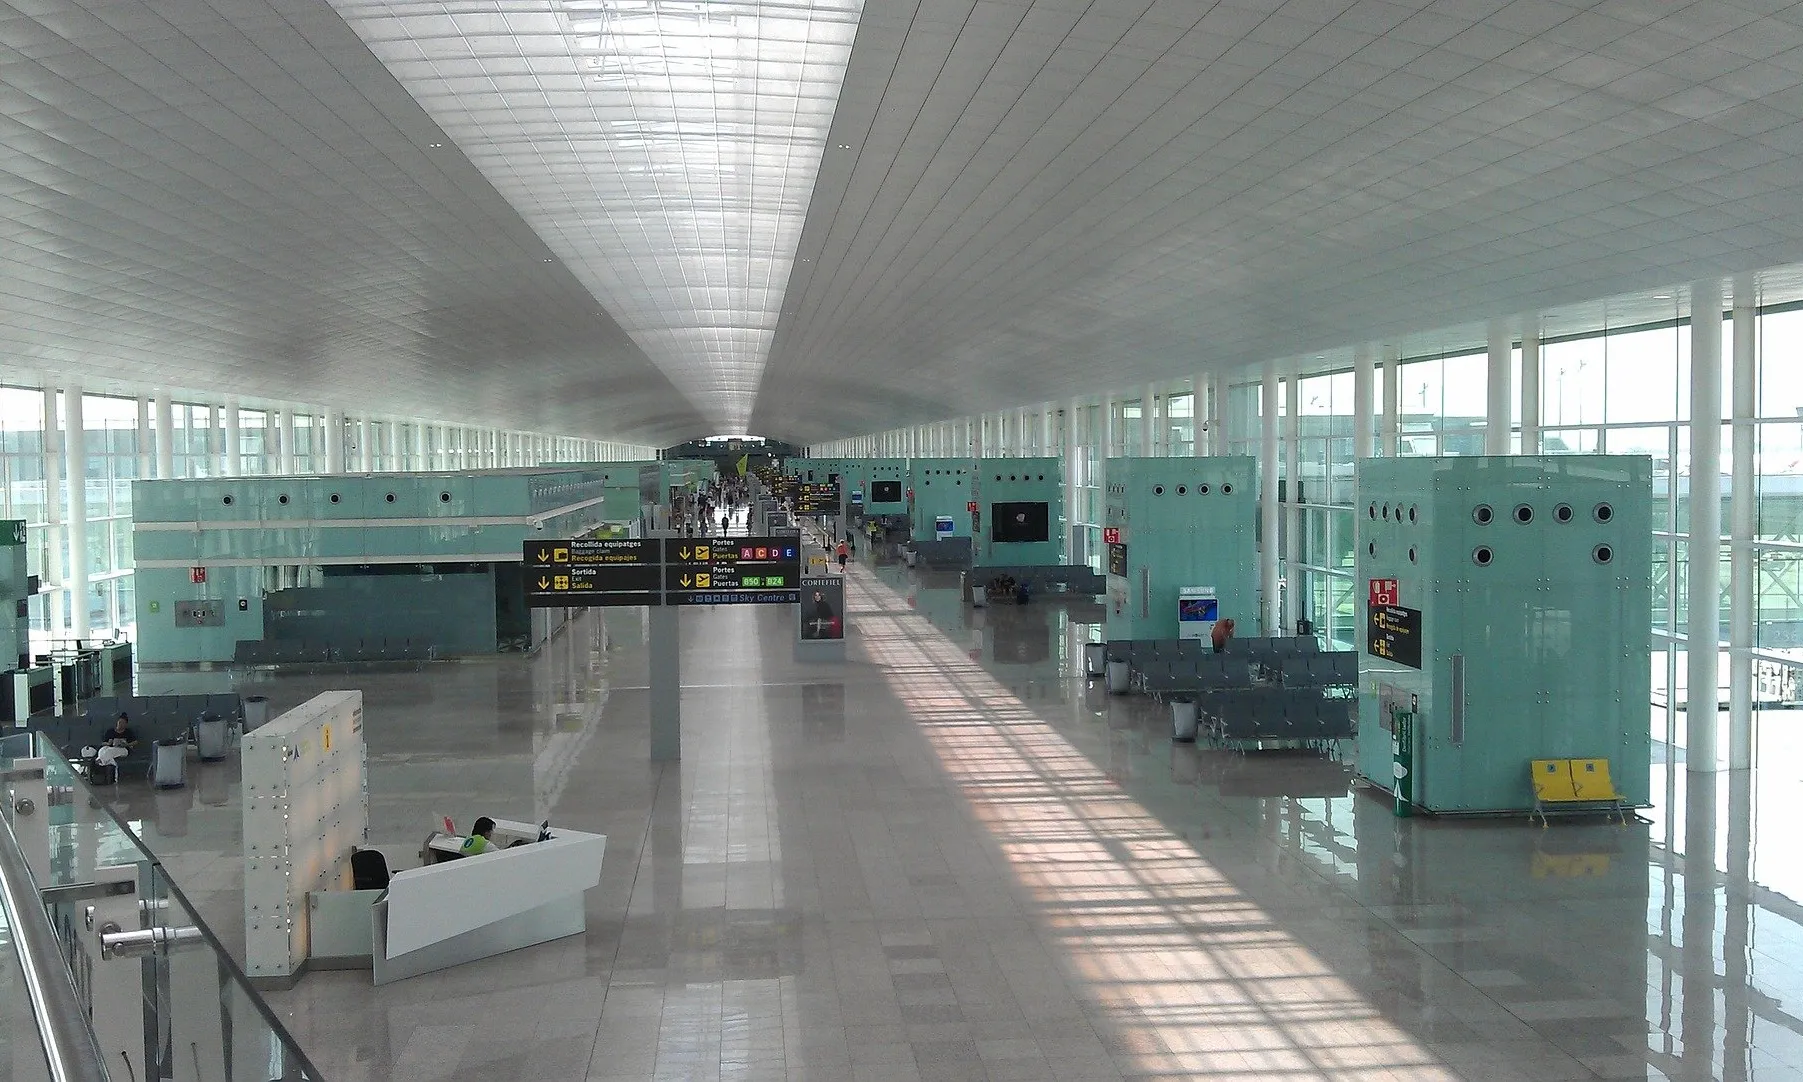 El president de la Generalitat assegura que el futur de l’aeroport implica un compromís absolut amb el medi ambient.